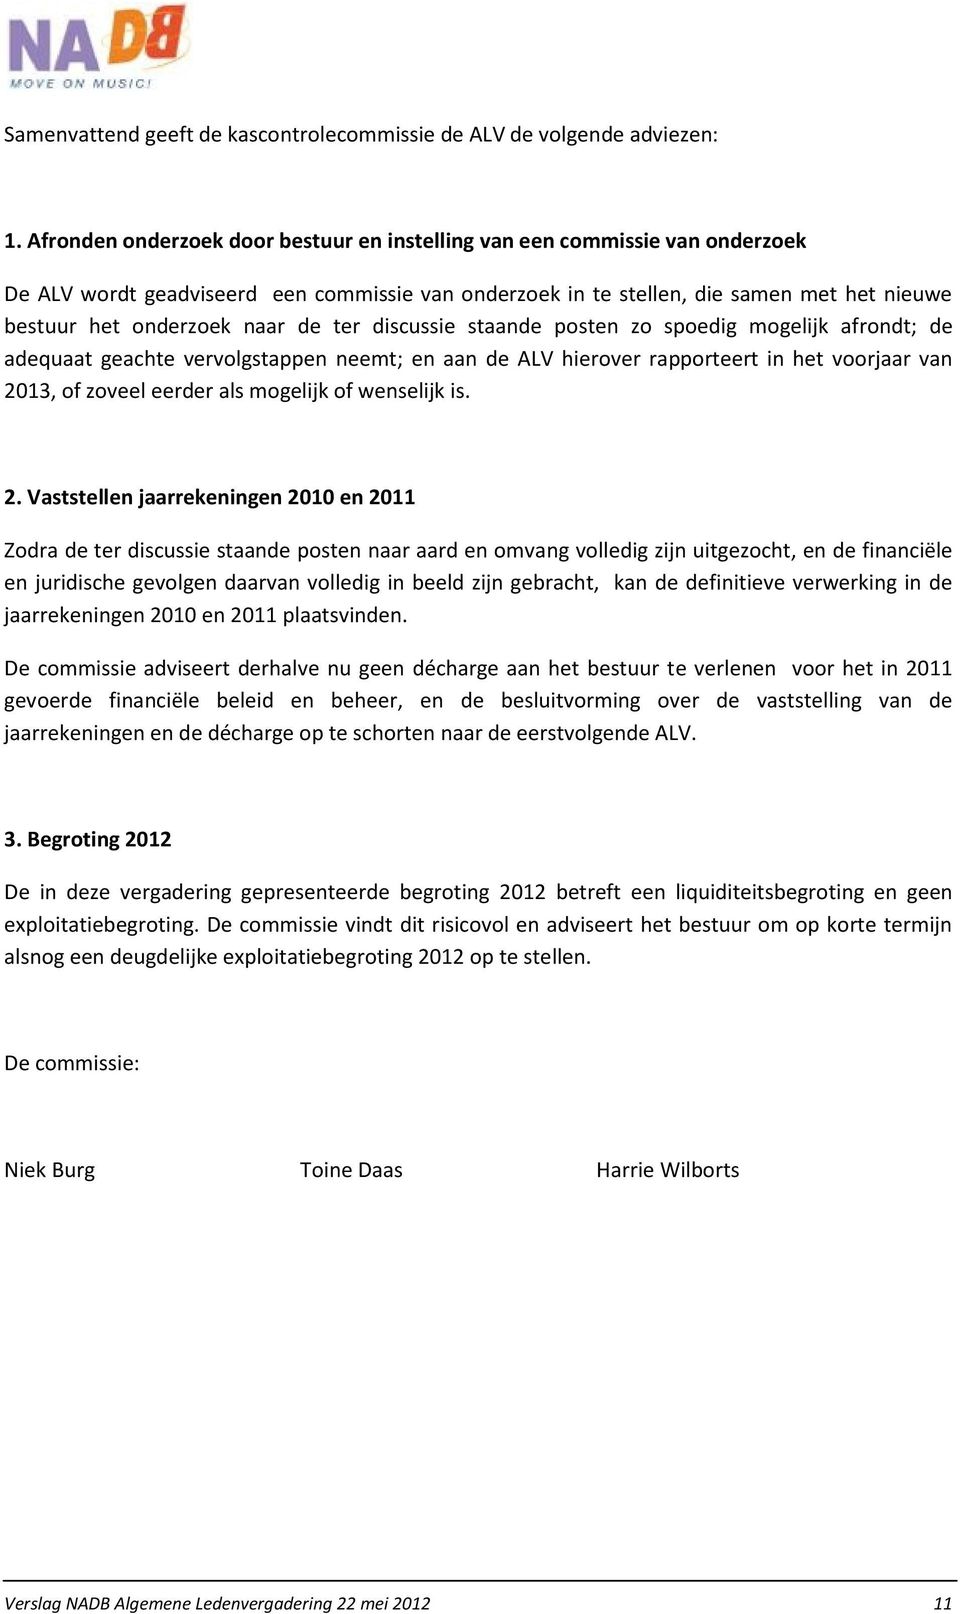 de ter discussie staande posten zo spoedig mogelijk afrondt; de adequaat geachte vervolgstappen neemt; en aan de ALV hierover rapporteert in het voorjaar van 2013, of zoveel eerder als mogelijk of